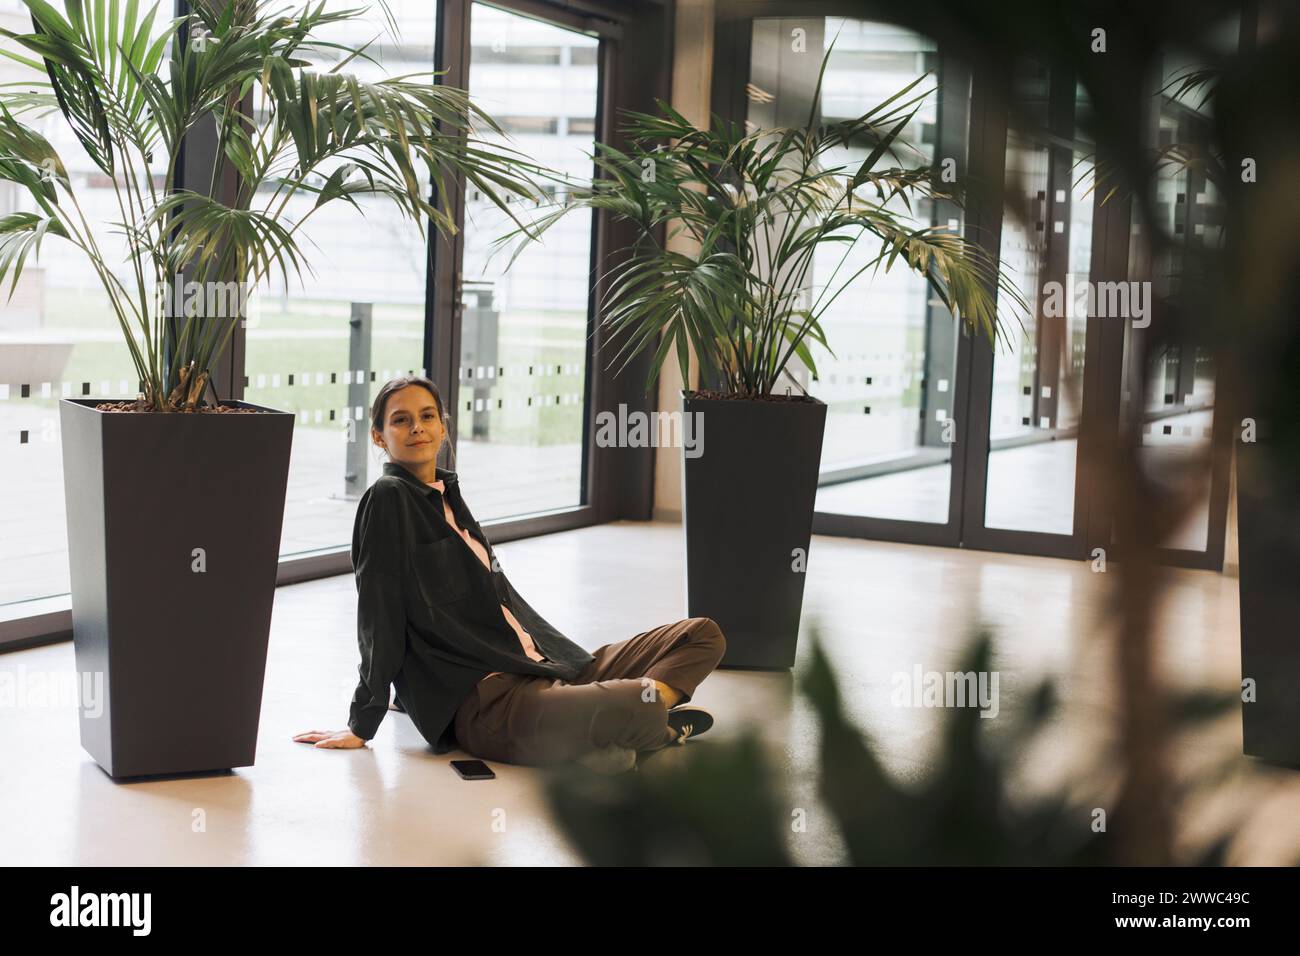 Lächelnde Geschäftsfrau, die neben Pflanzen auf dem Boden sitzt Stockfoto